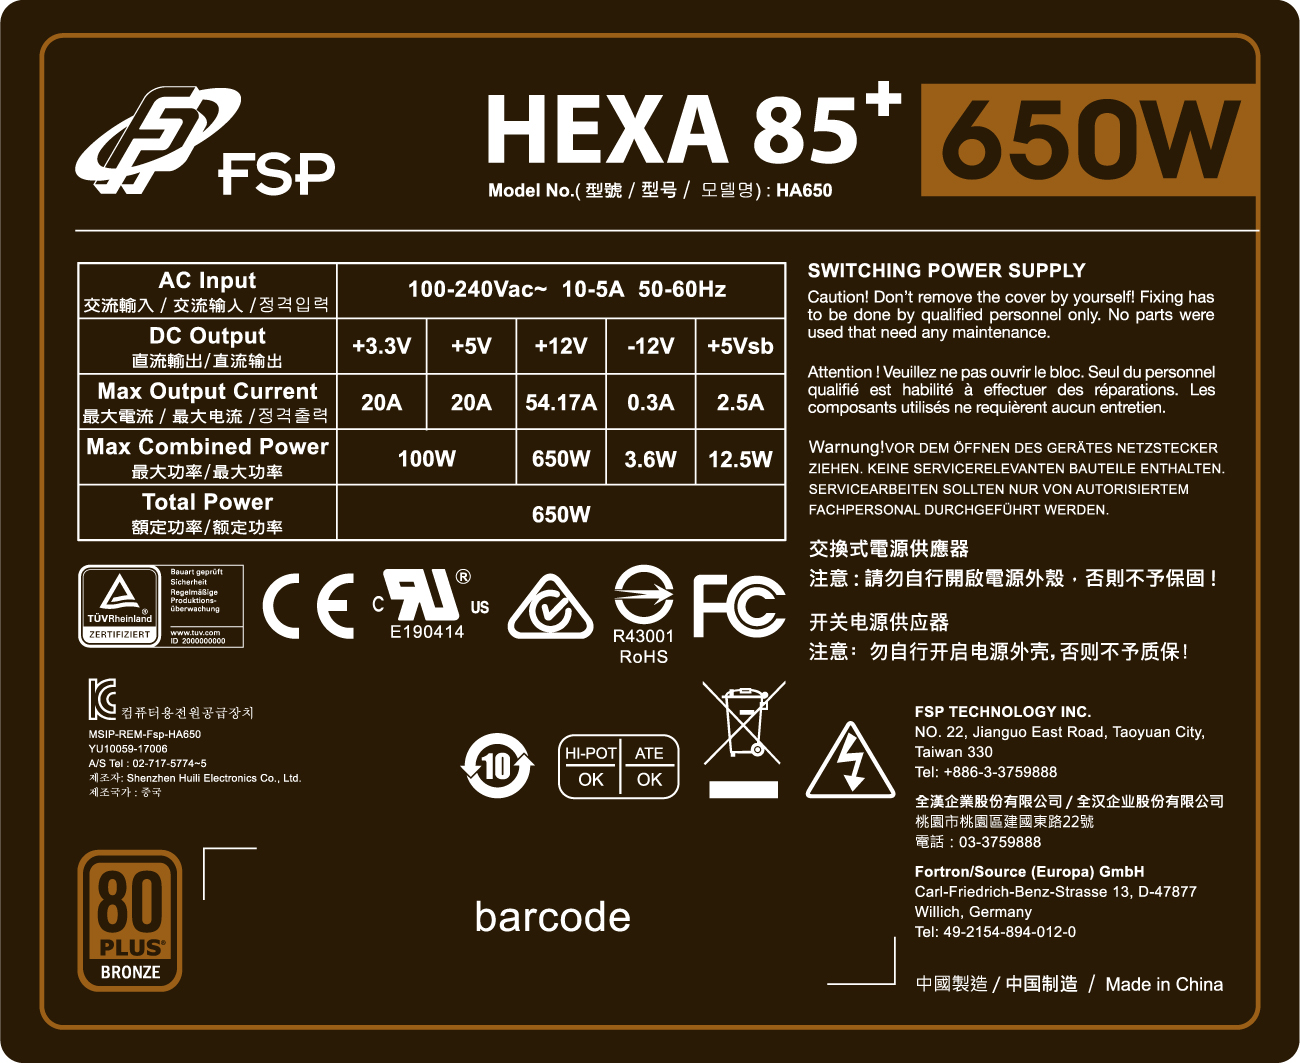 全漢聖武士(HEXA 85+)_650W大標